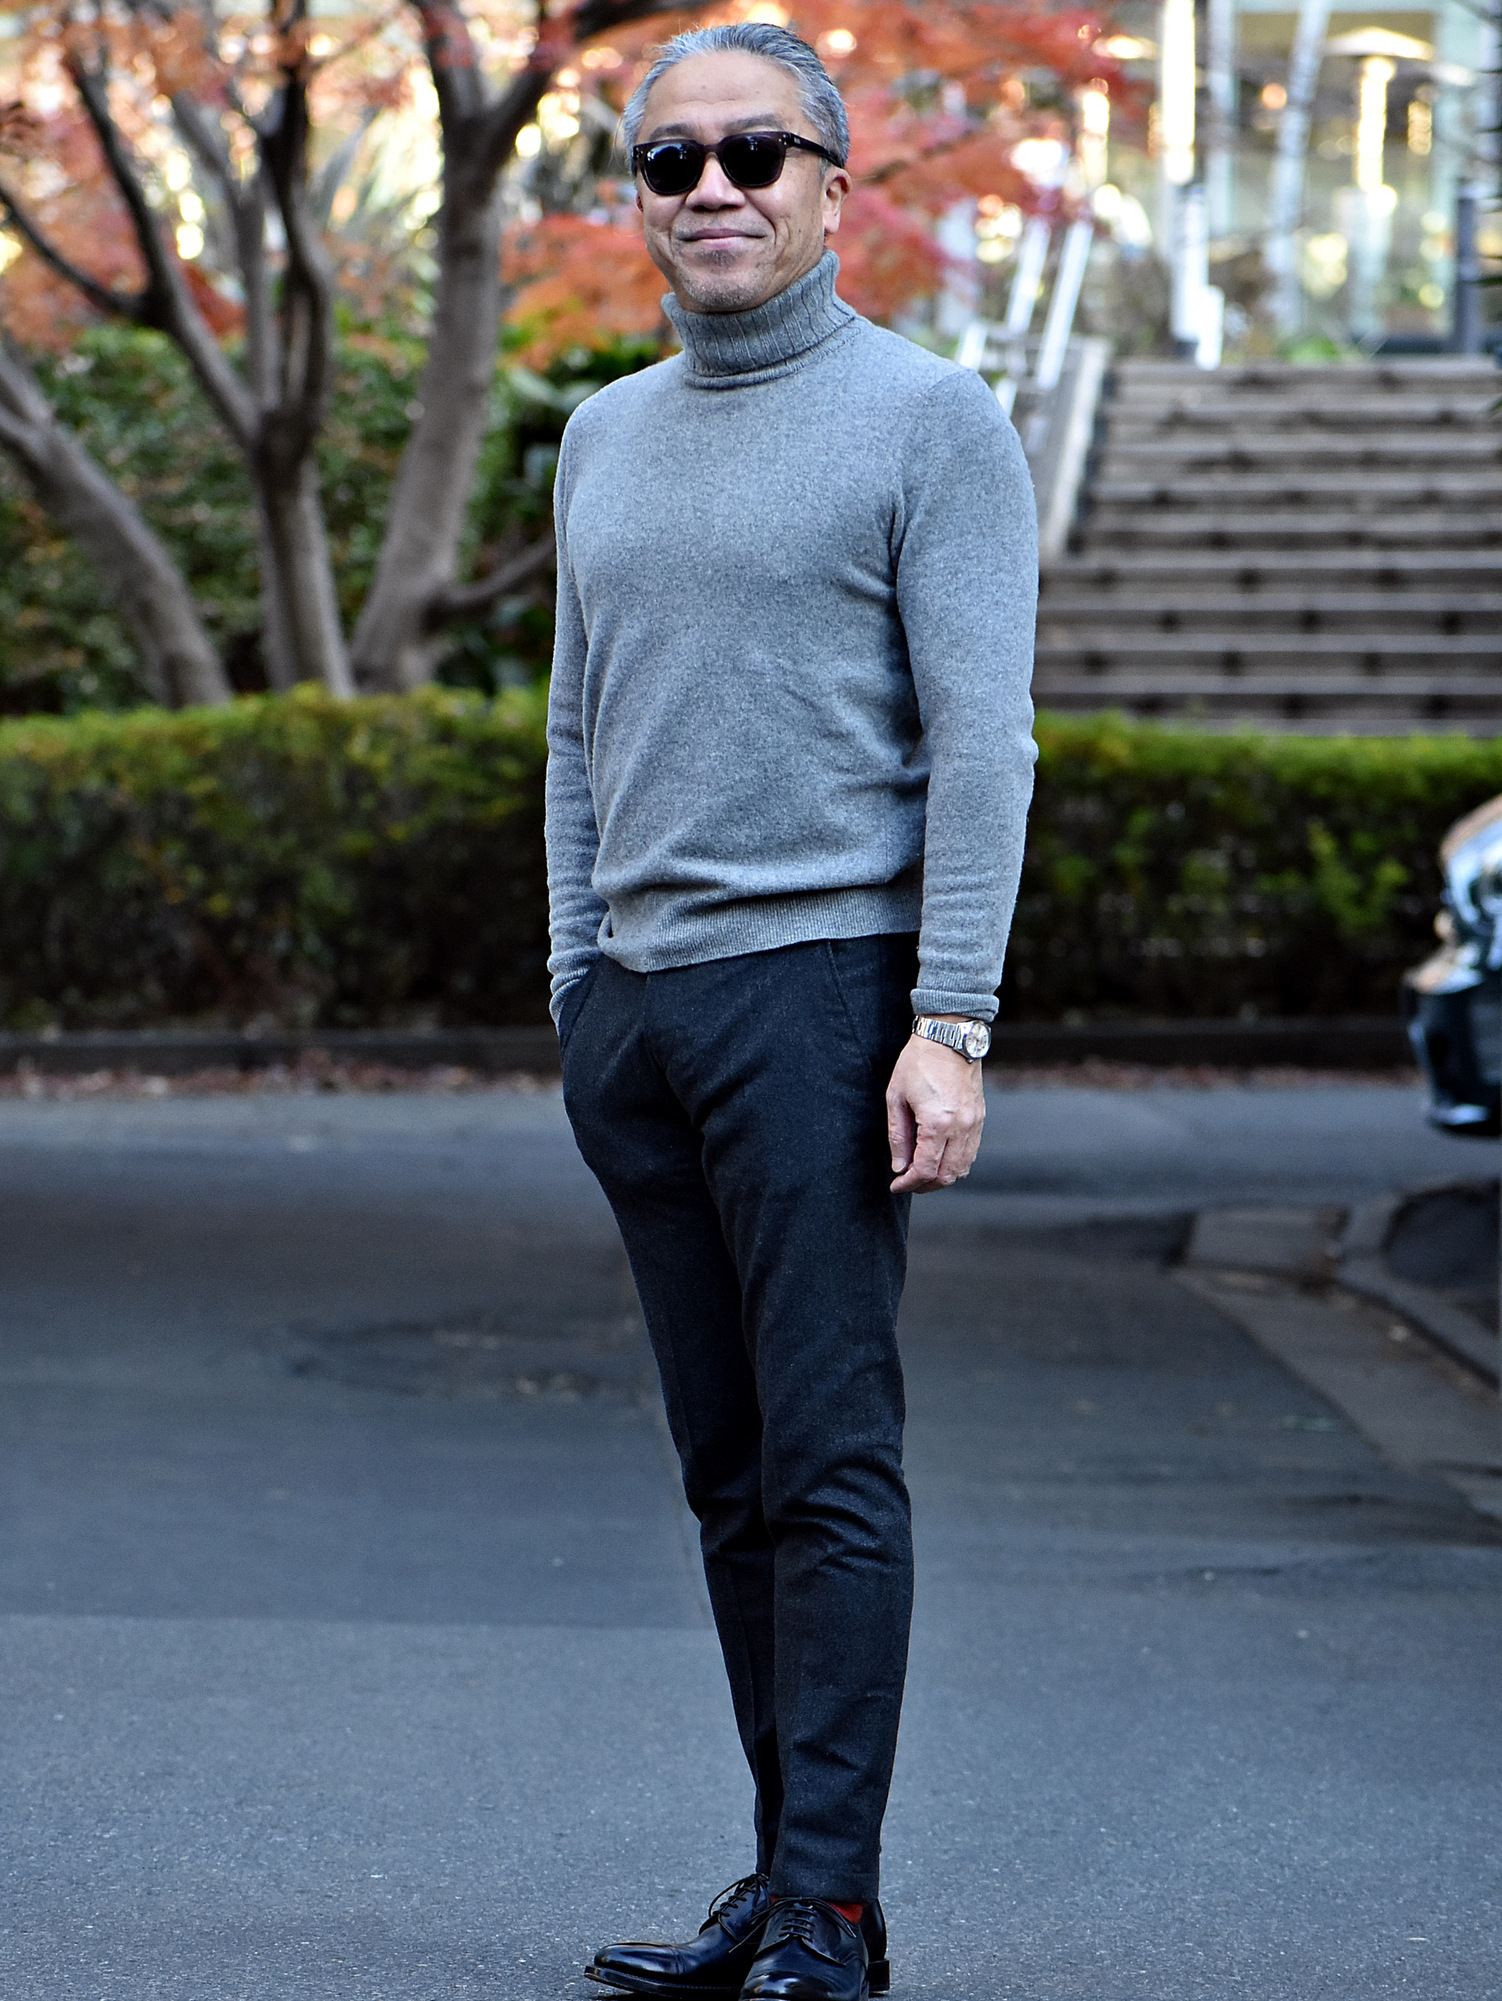 40代メンズ向けグレー ウールパンツの着こなし方法【写真】